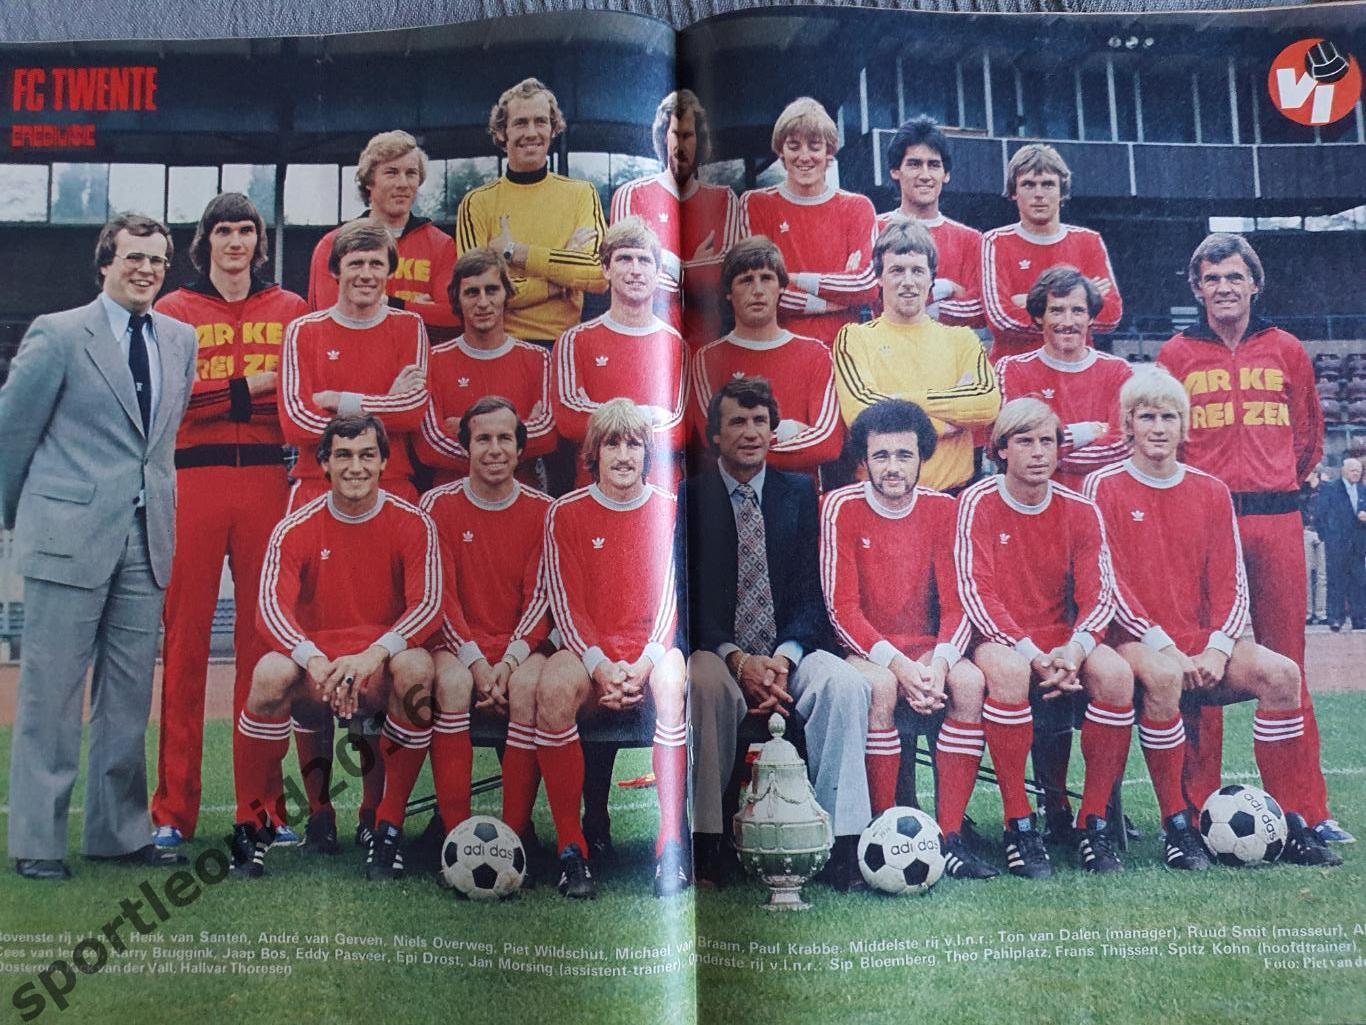 Voetbal International 1977 51 выпуск годовая подписка .1 3